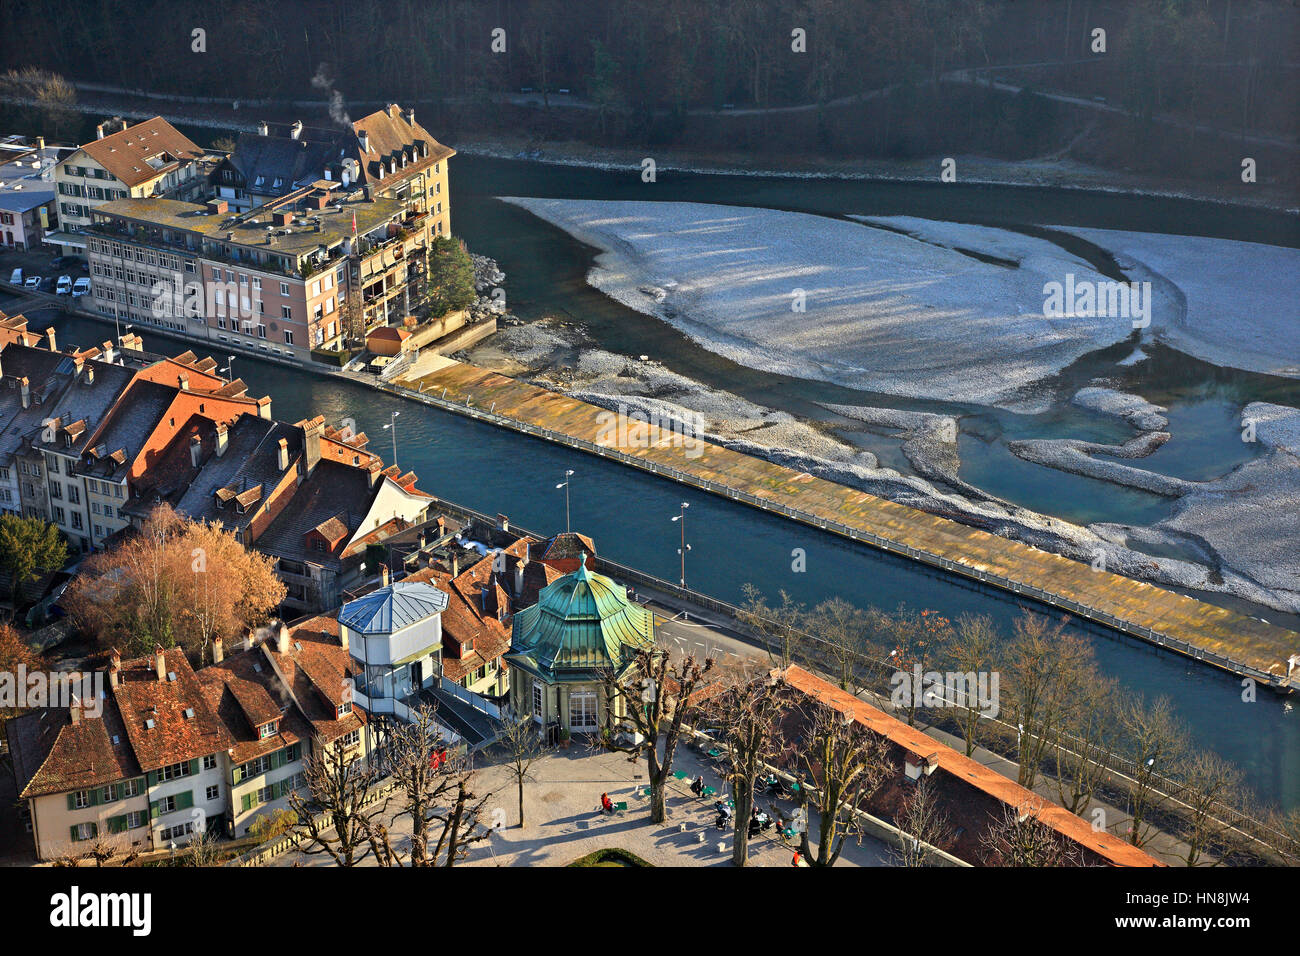 Vista parcial de la parte sur de la Ciudad Vieja (Altstadt) de Berna y el río Aare desde el campanario de la Catedral (Münster). Suiza. Foto de stock